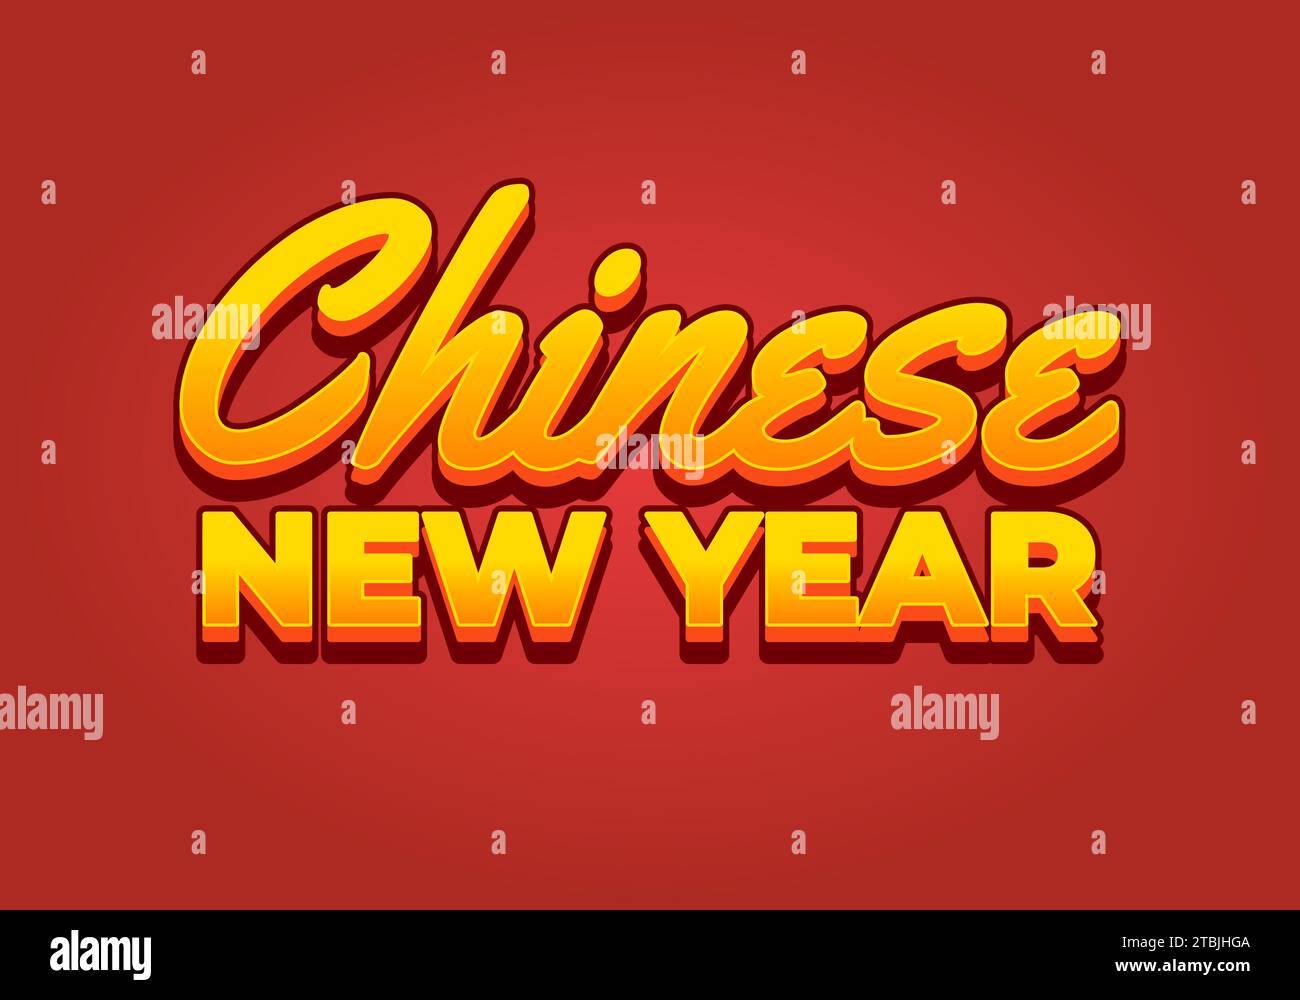 Chinesisches Neujahr. Texteffekt-Design im 3D-Look. Gelbe Farbe Stock Vektor